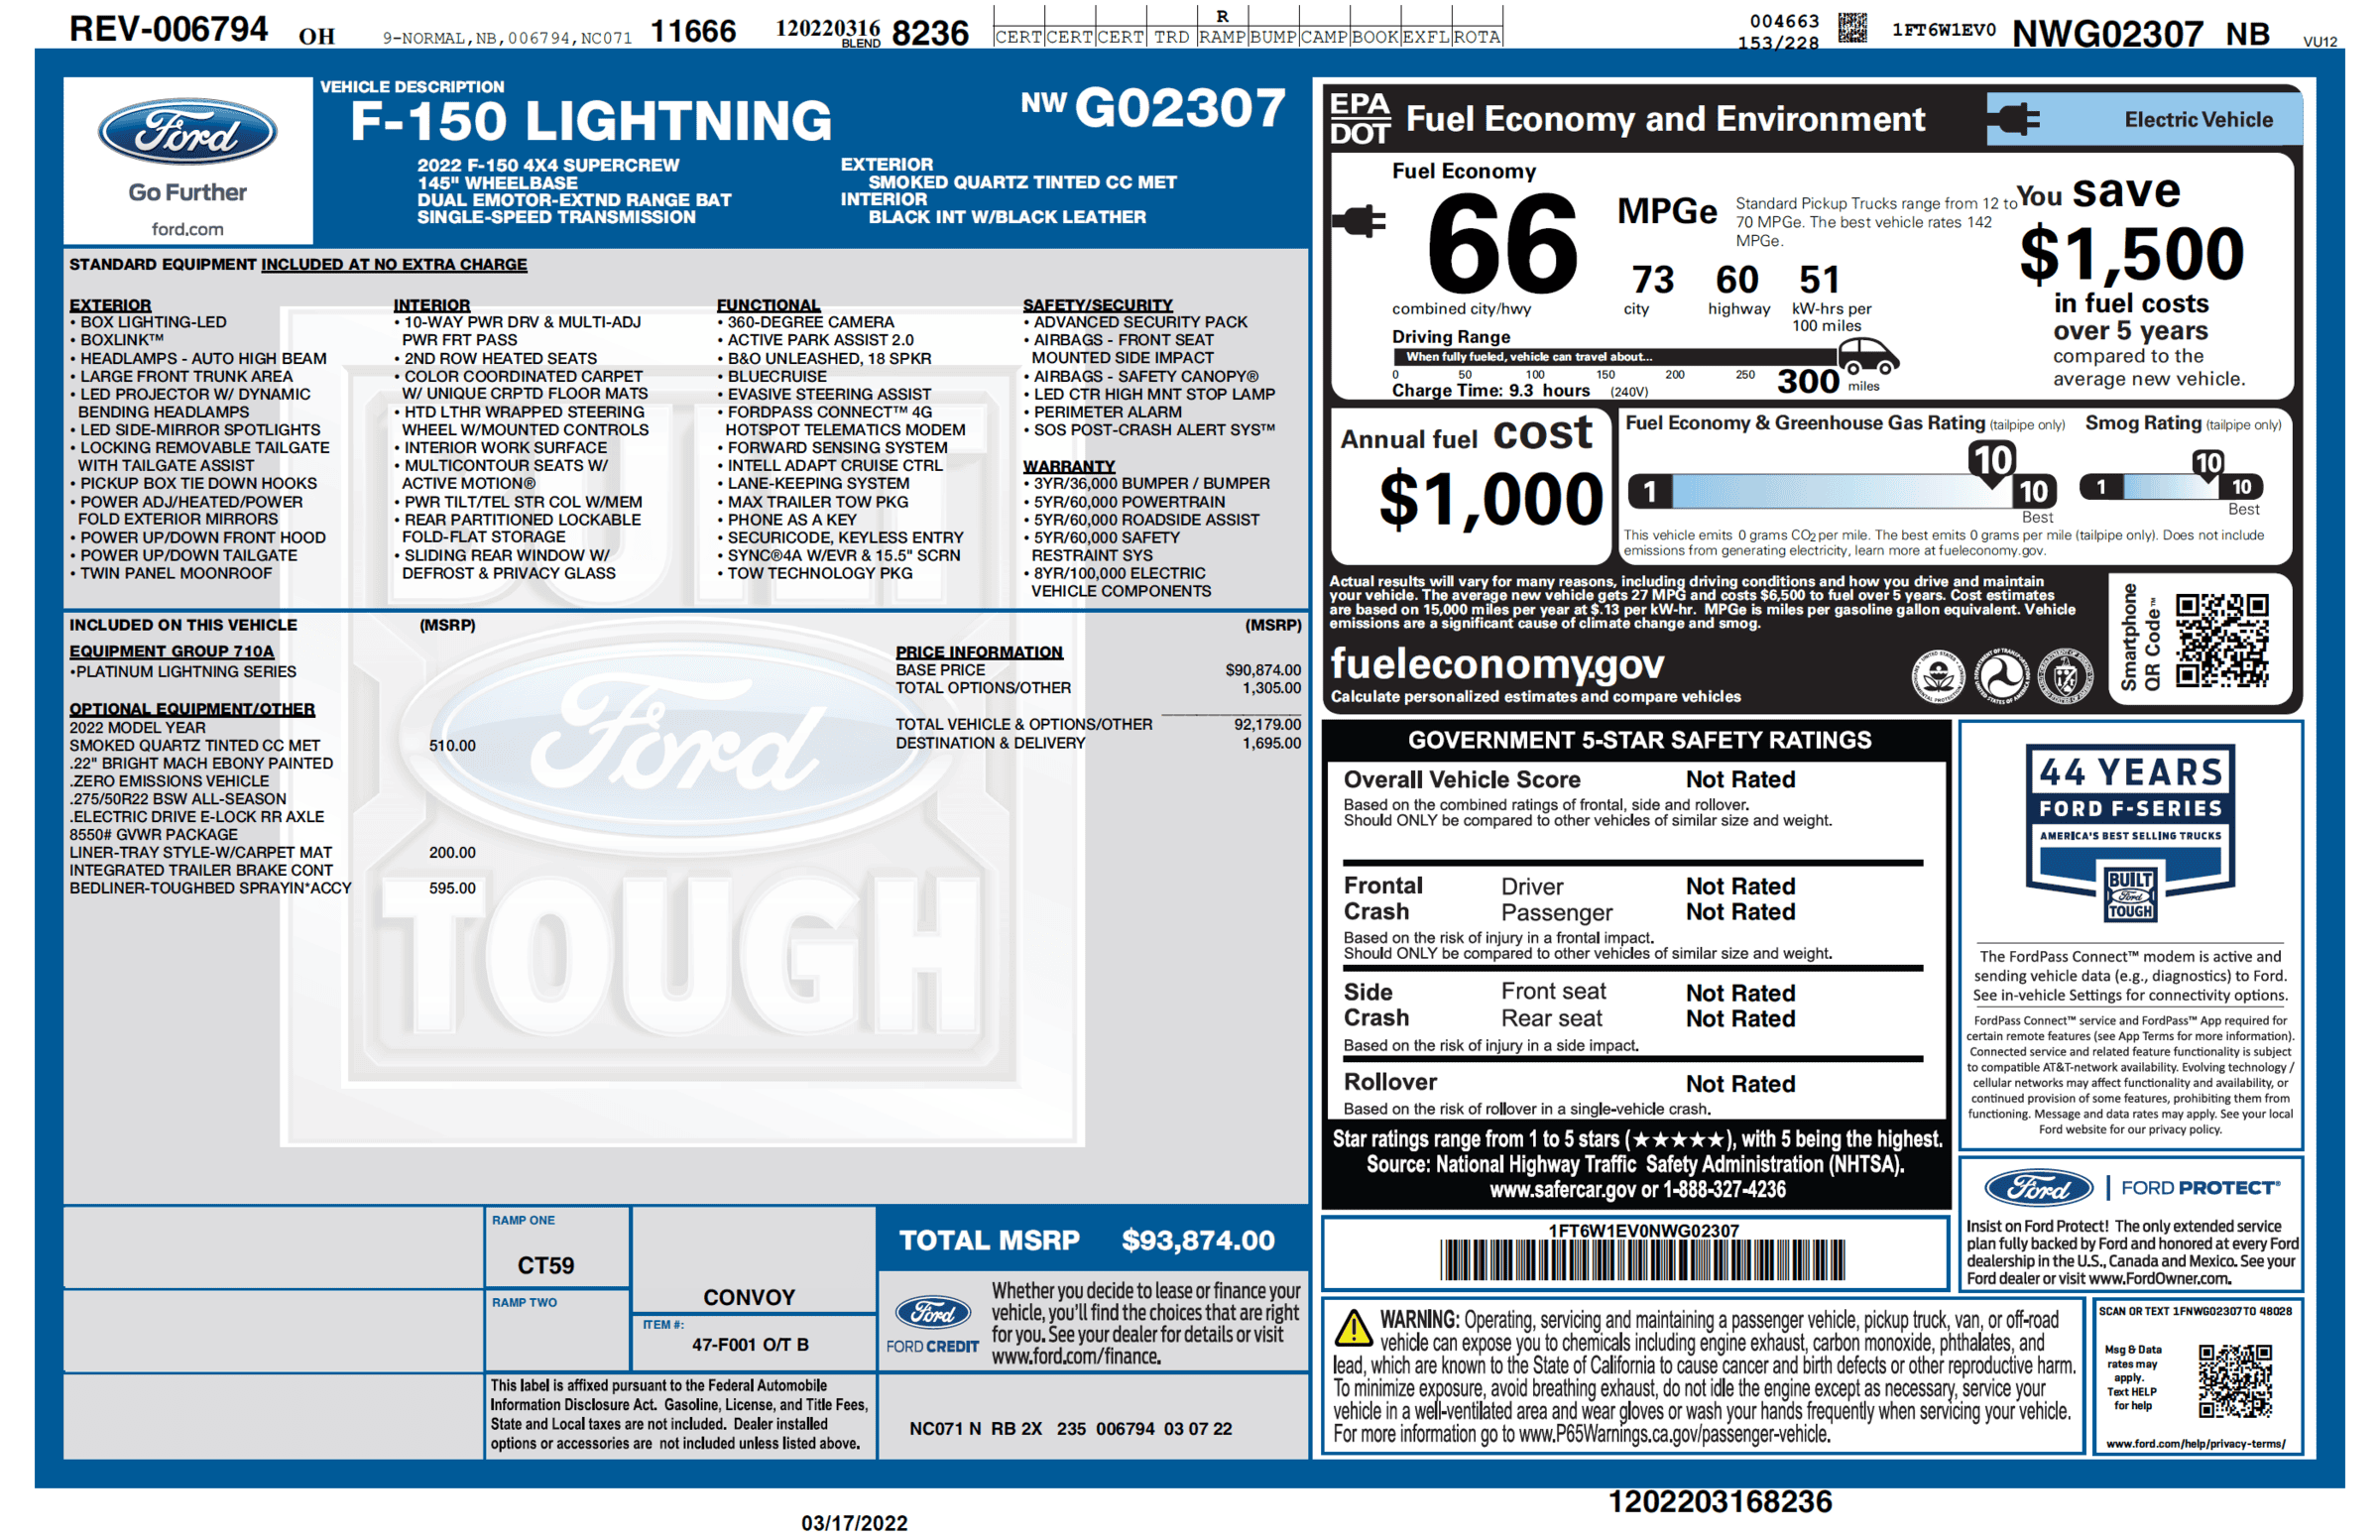 Ford F-150 Lightning F-150 Lightning Official EPA Range MPGe Revealed in Window Sticker (Base + Extended Range)! 1647536394991-